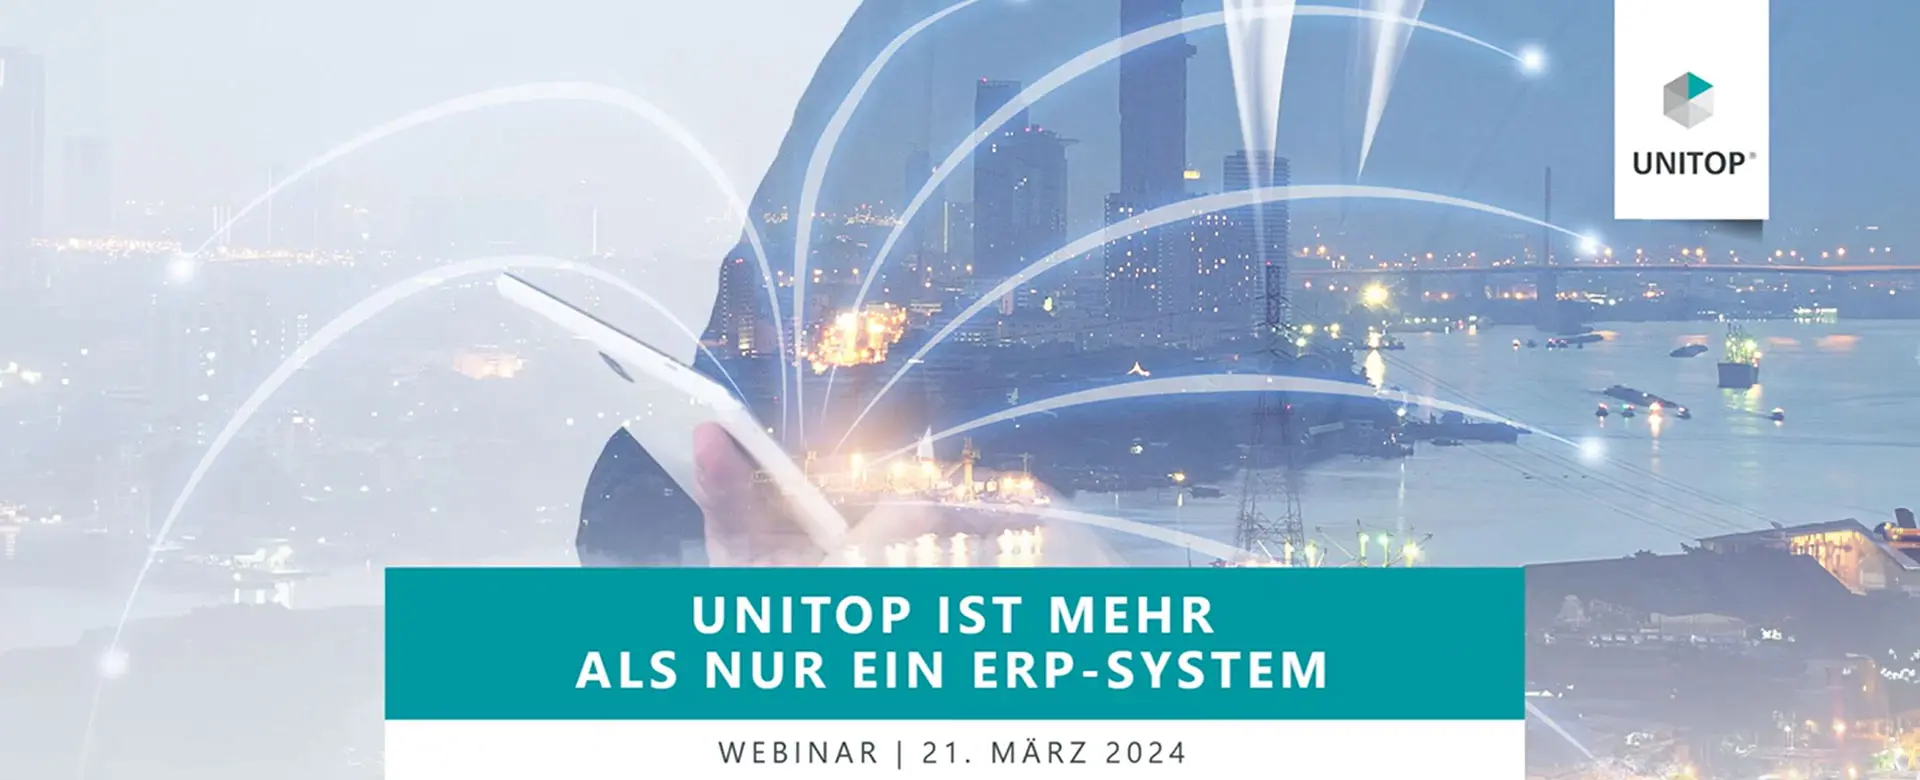 Headerbild mit Titelfolie der Präsentation für das Webinar "unitop ist mehr als nur ein ERP-System"